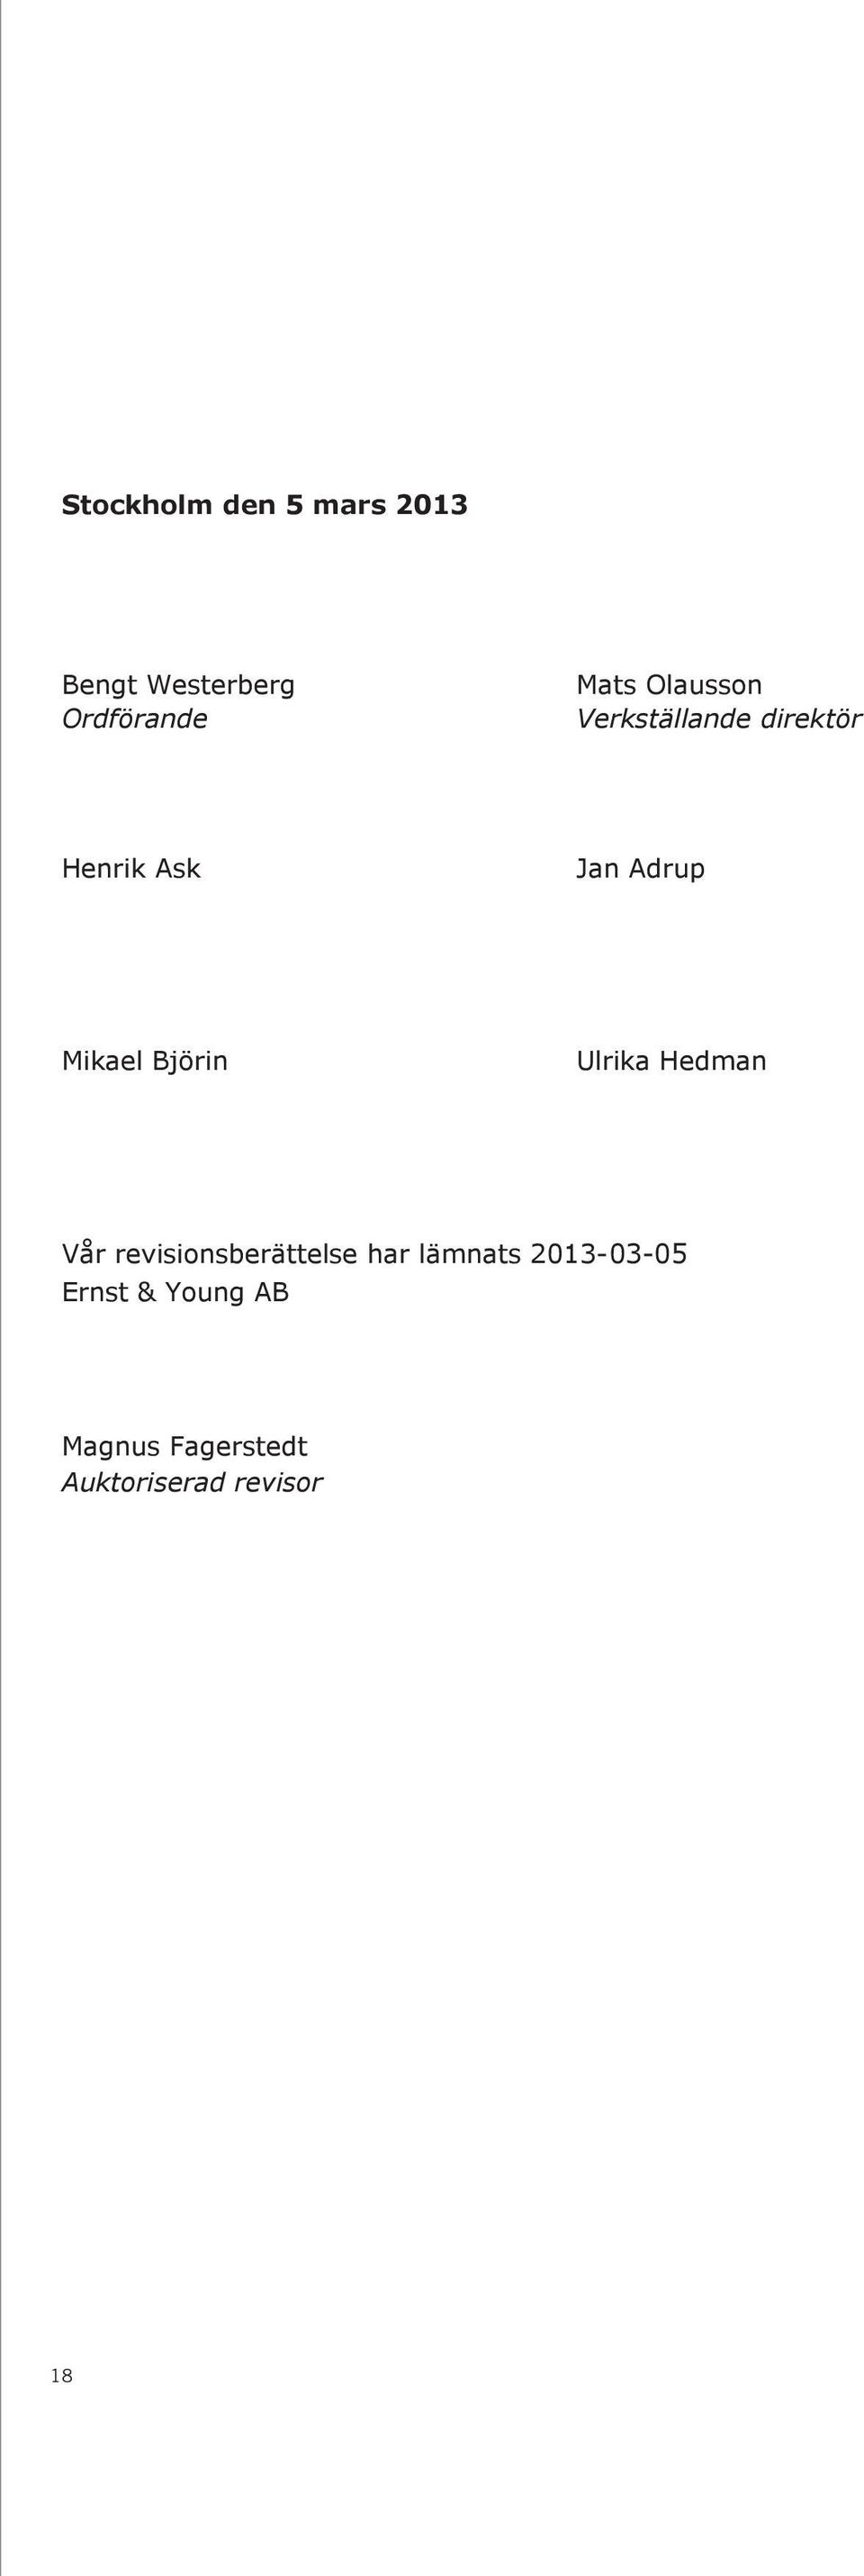 468 167 2 899 670 1 792 758 Stockholm den 5 mars 2013 2013 Bengt Westerberg Ordförande Mats Olausson Verkställande direktör Henrik Ask